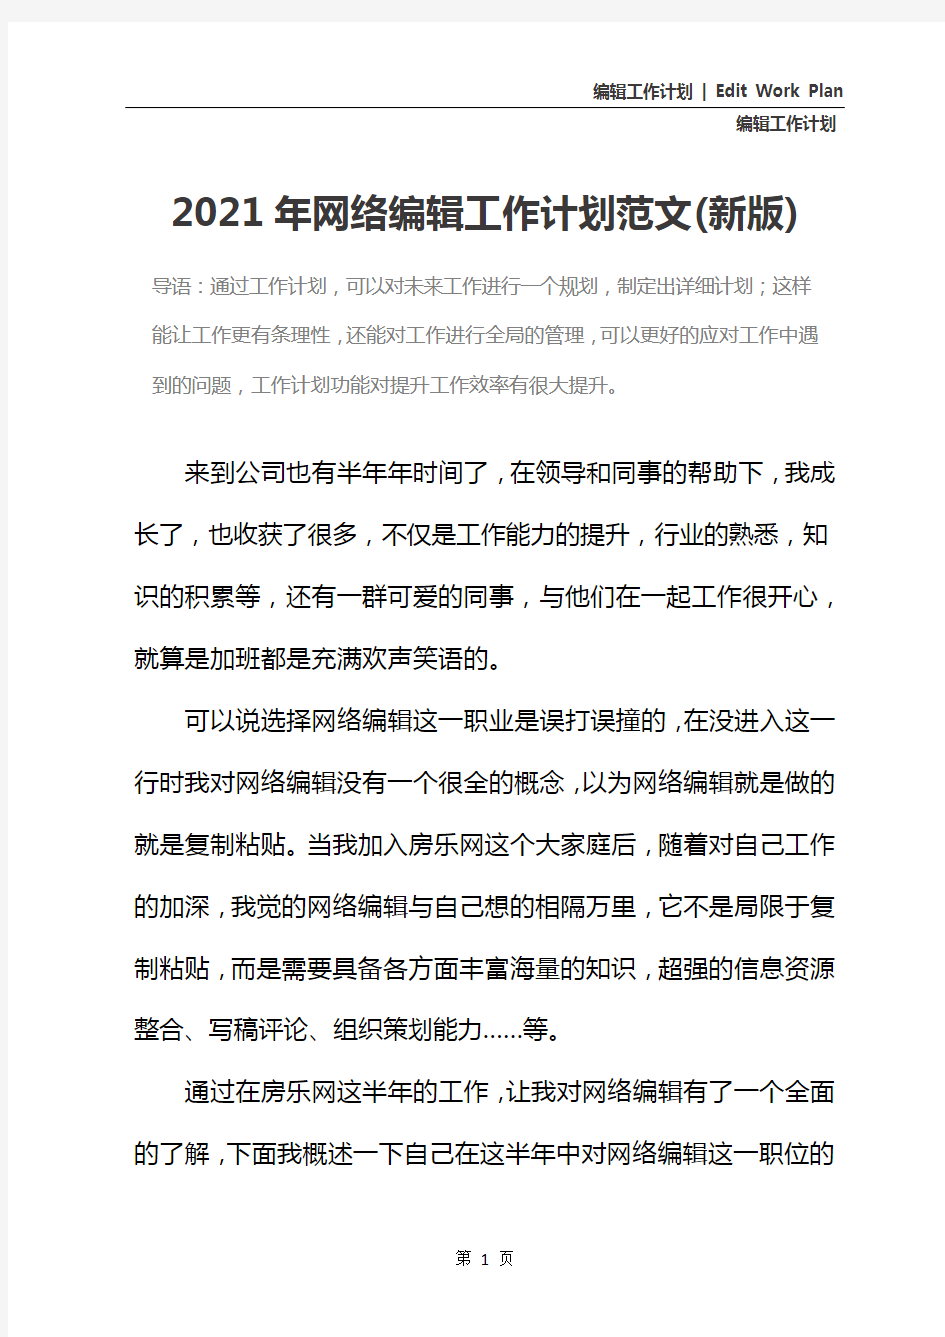 2021年网络编辑工作计划范文(新版)